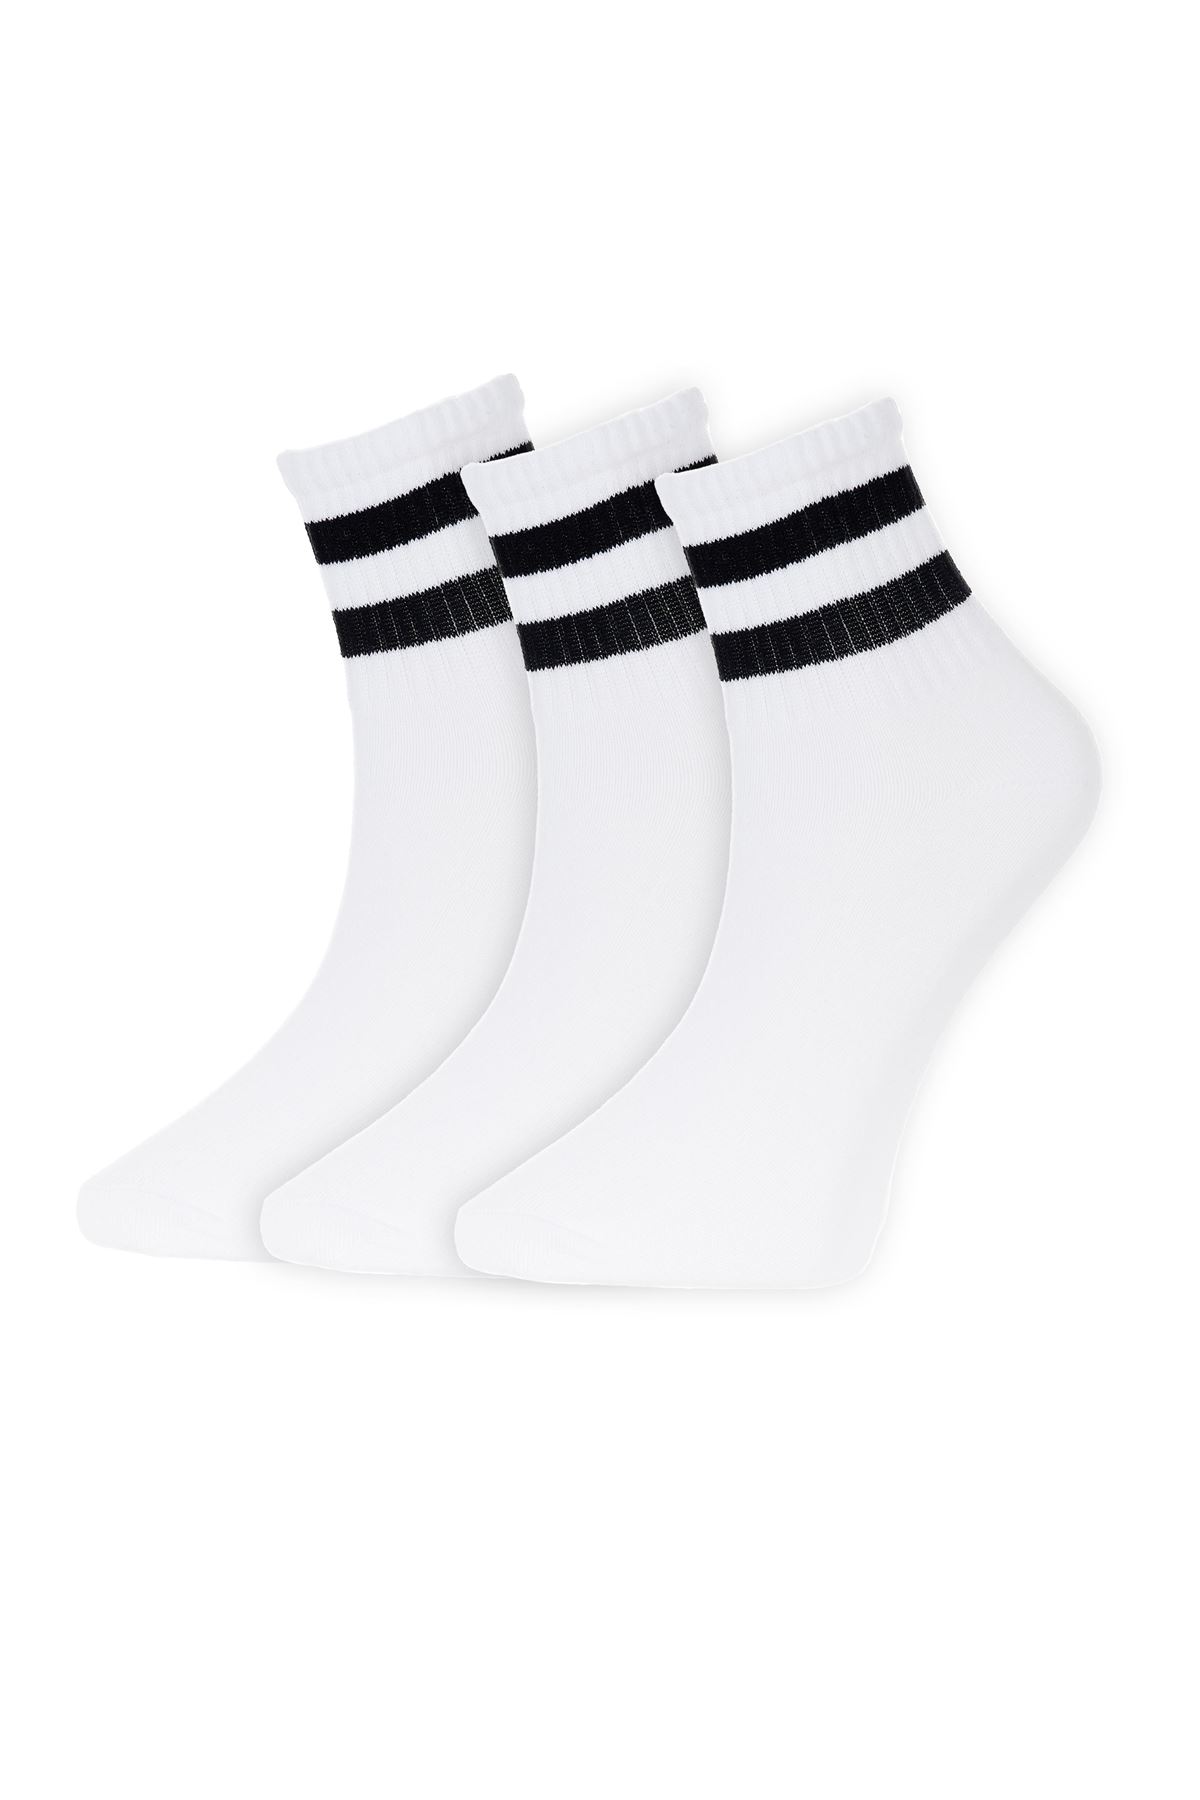 Siyah/beyaz Çemberli 3 Çift Ekonomik Paket Kısa Tenis Çorap BEYAZ